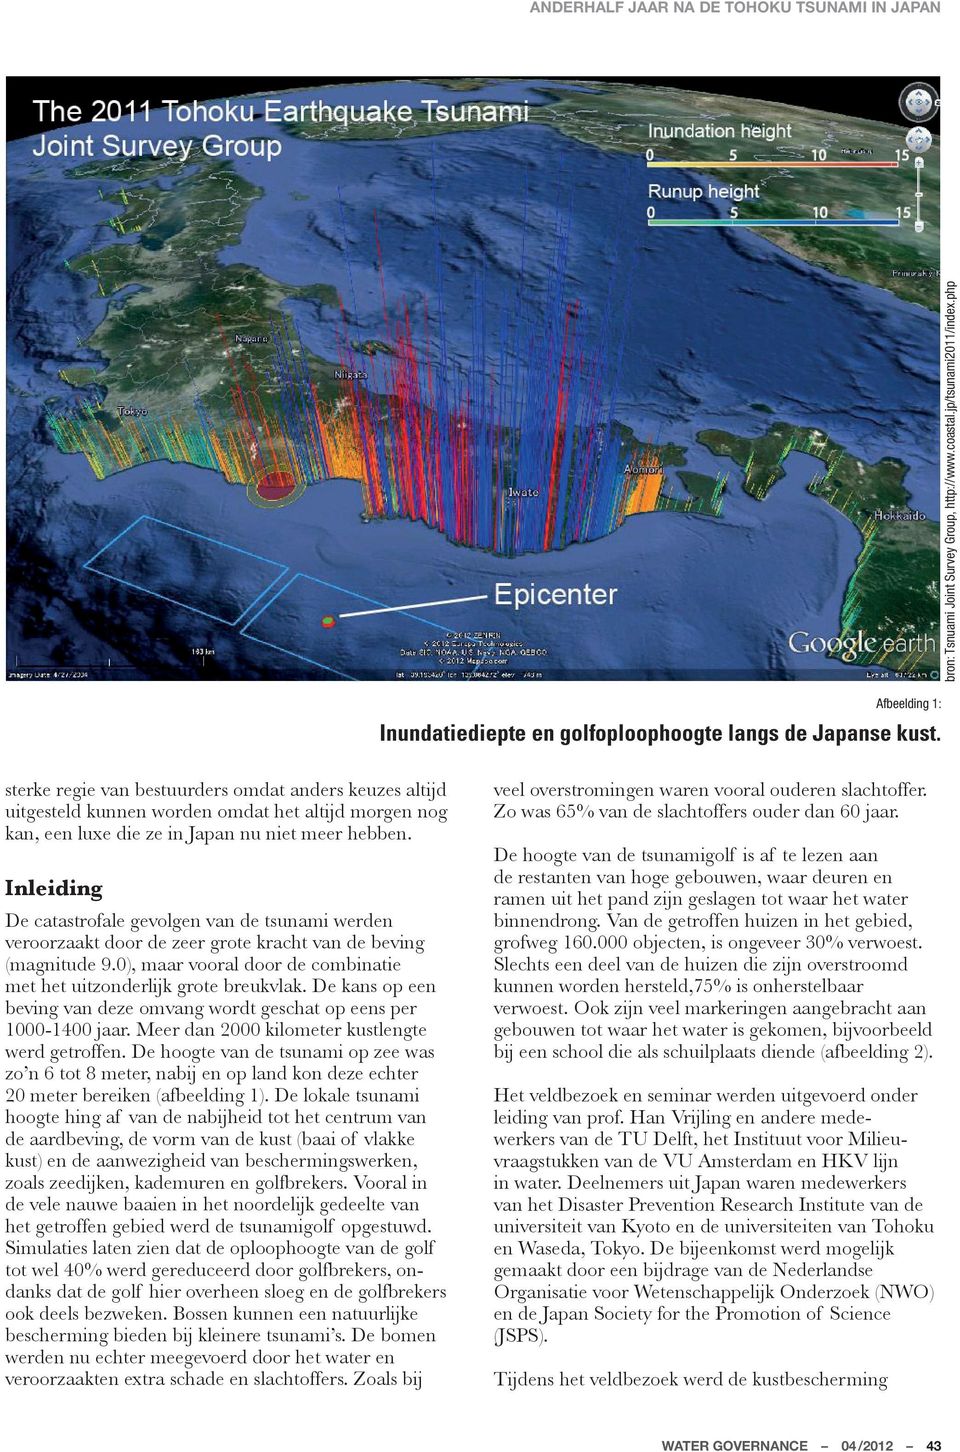 Inleiding De catastrofale gevolgen van de tsunami werden veroorzaakt door de zeer grote kracht van de beving (magnitude 9.0), maar vooral door de combinatie met het uitzonderlijk grote breukvlak.